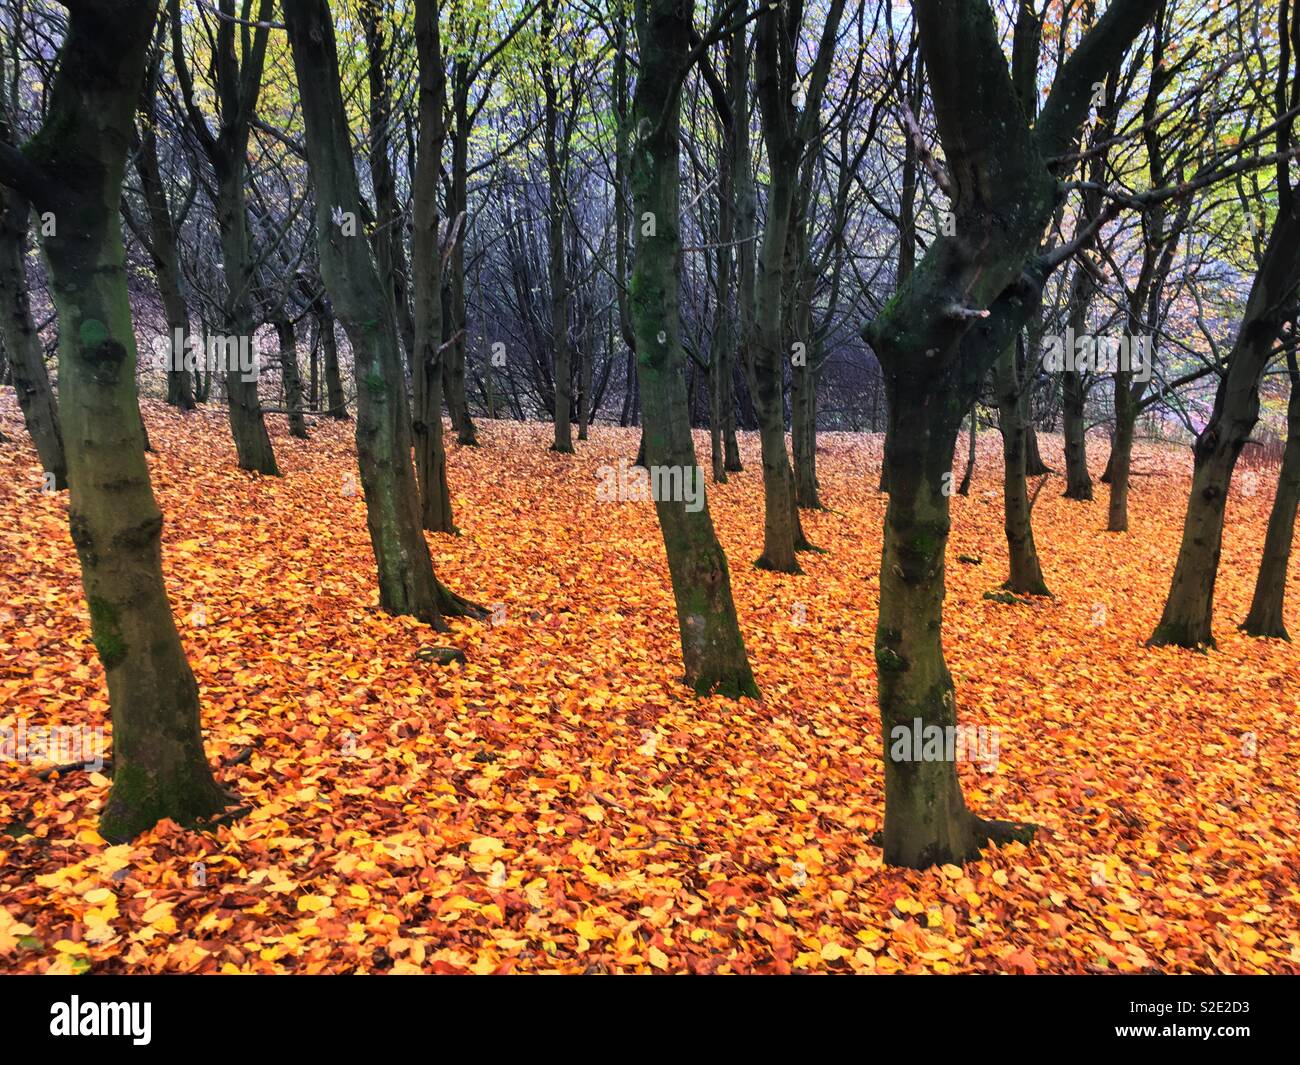 Fallen autumn leaves between barren tree trunks in Leverhulme Park in Bolton Stock Photo